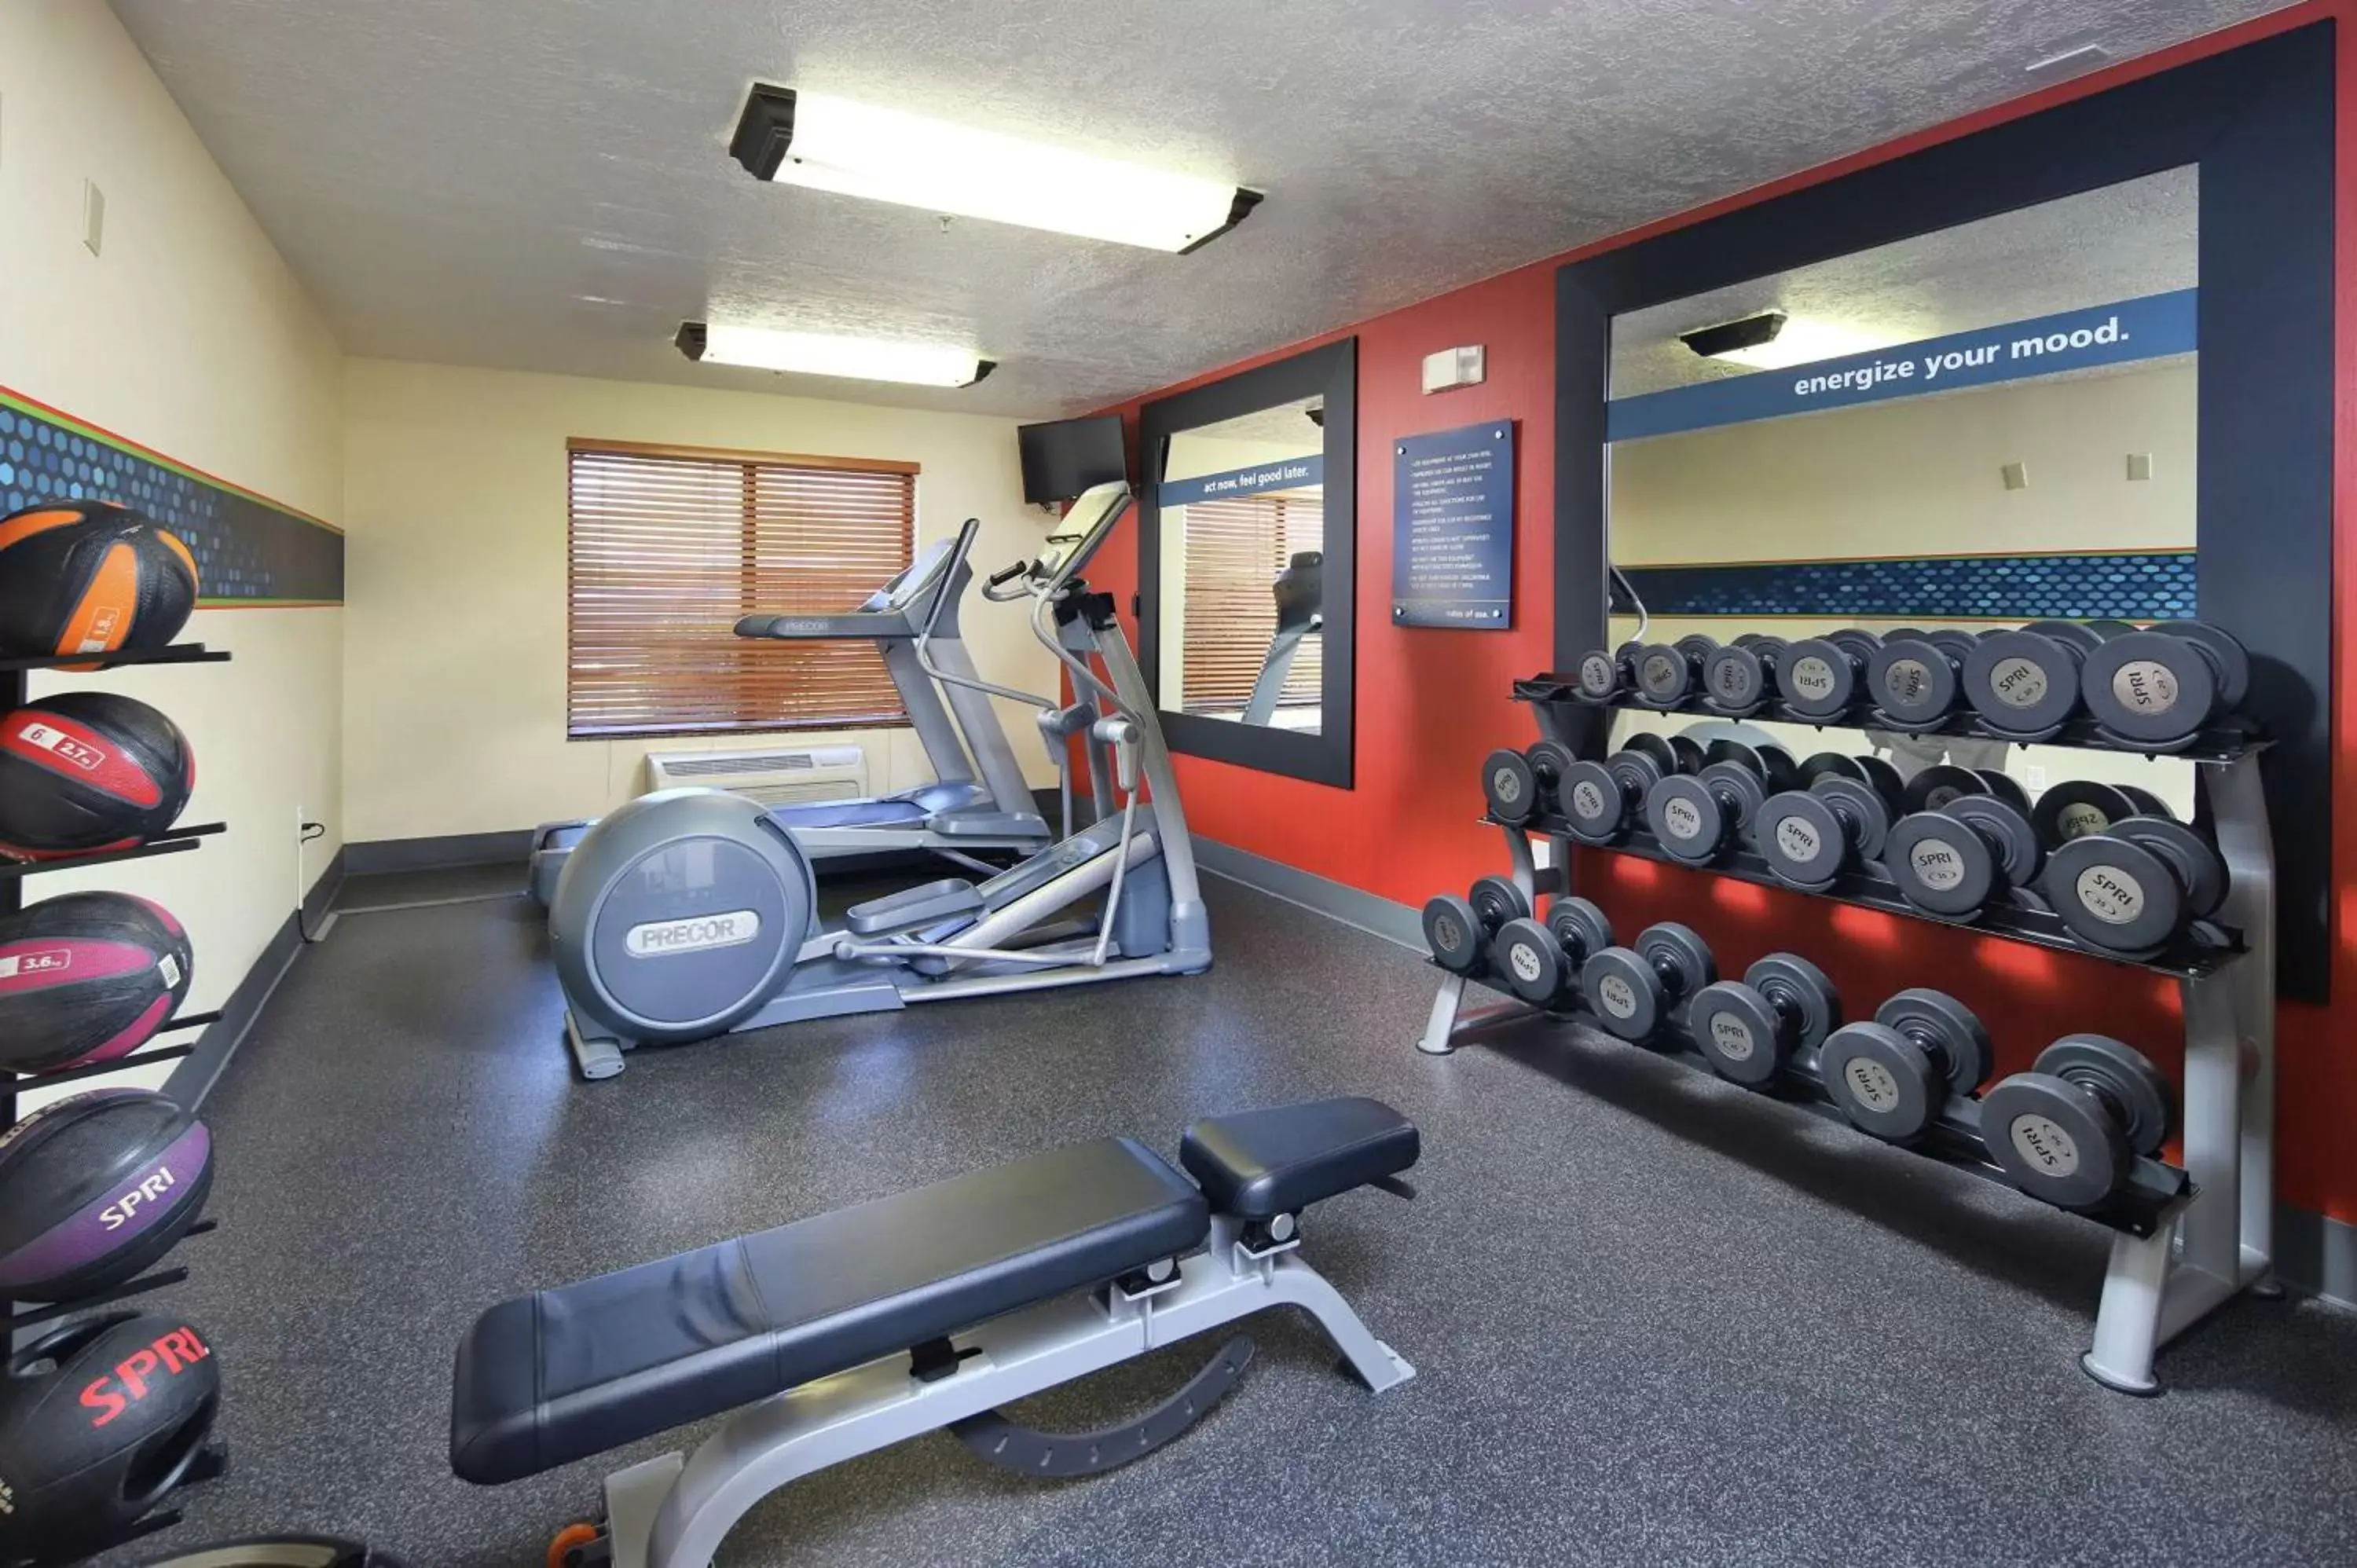 Fitness centre/facilities, Fitness Center/Facilities in Hampton Inn Sierra Vista